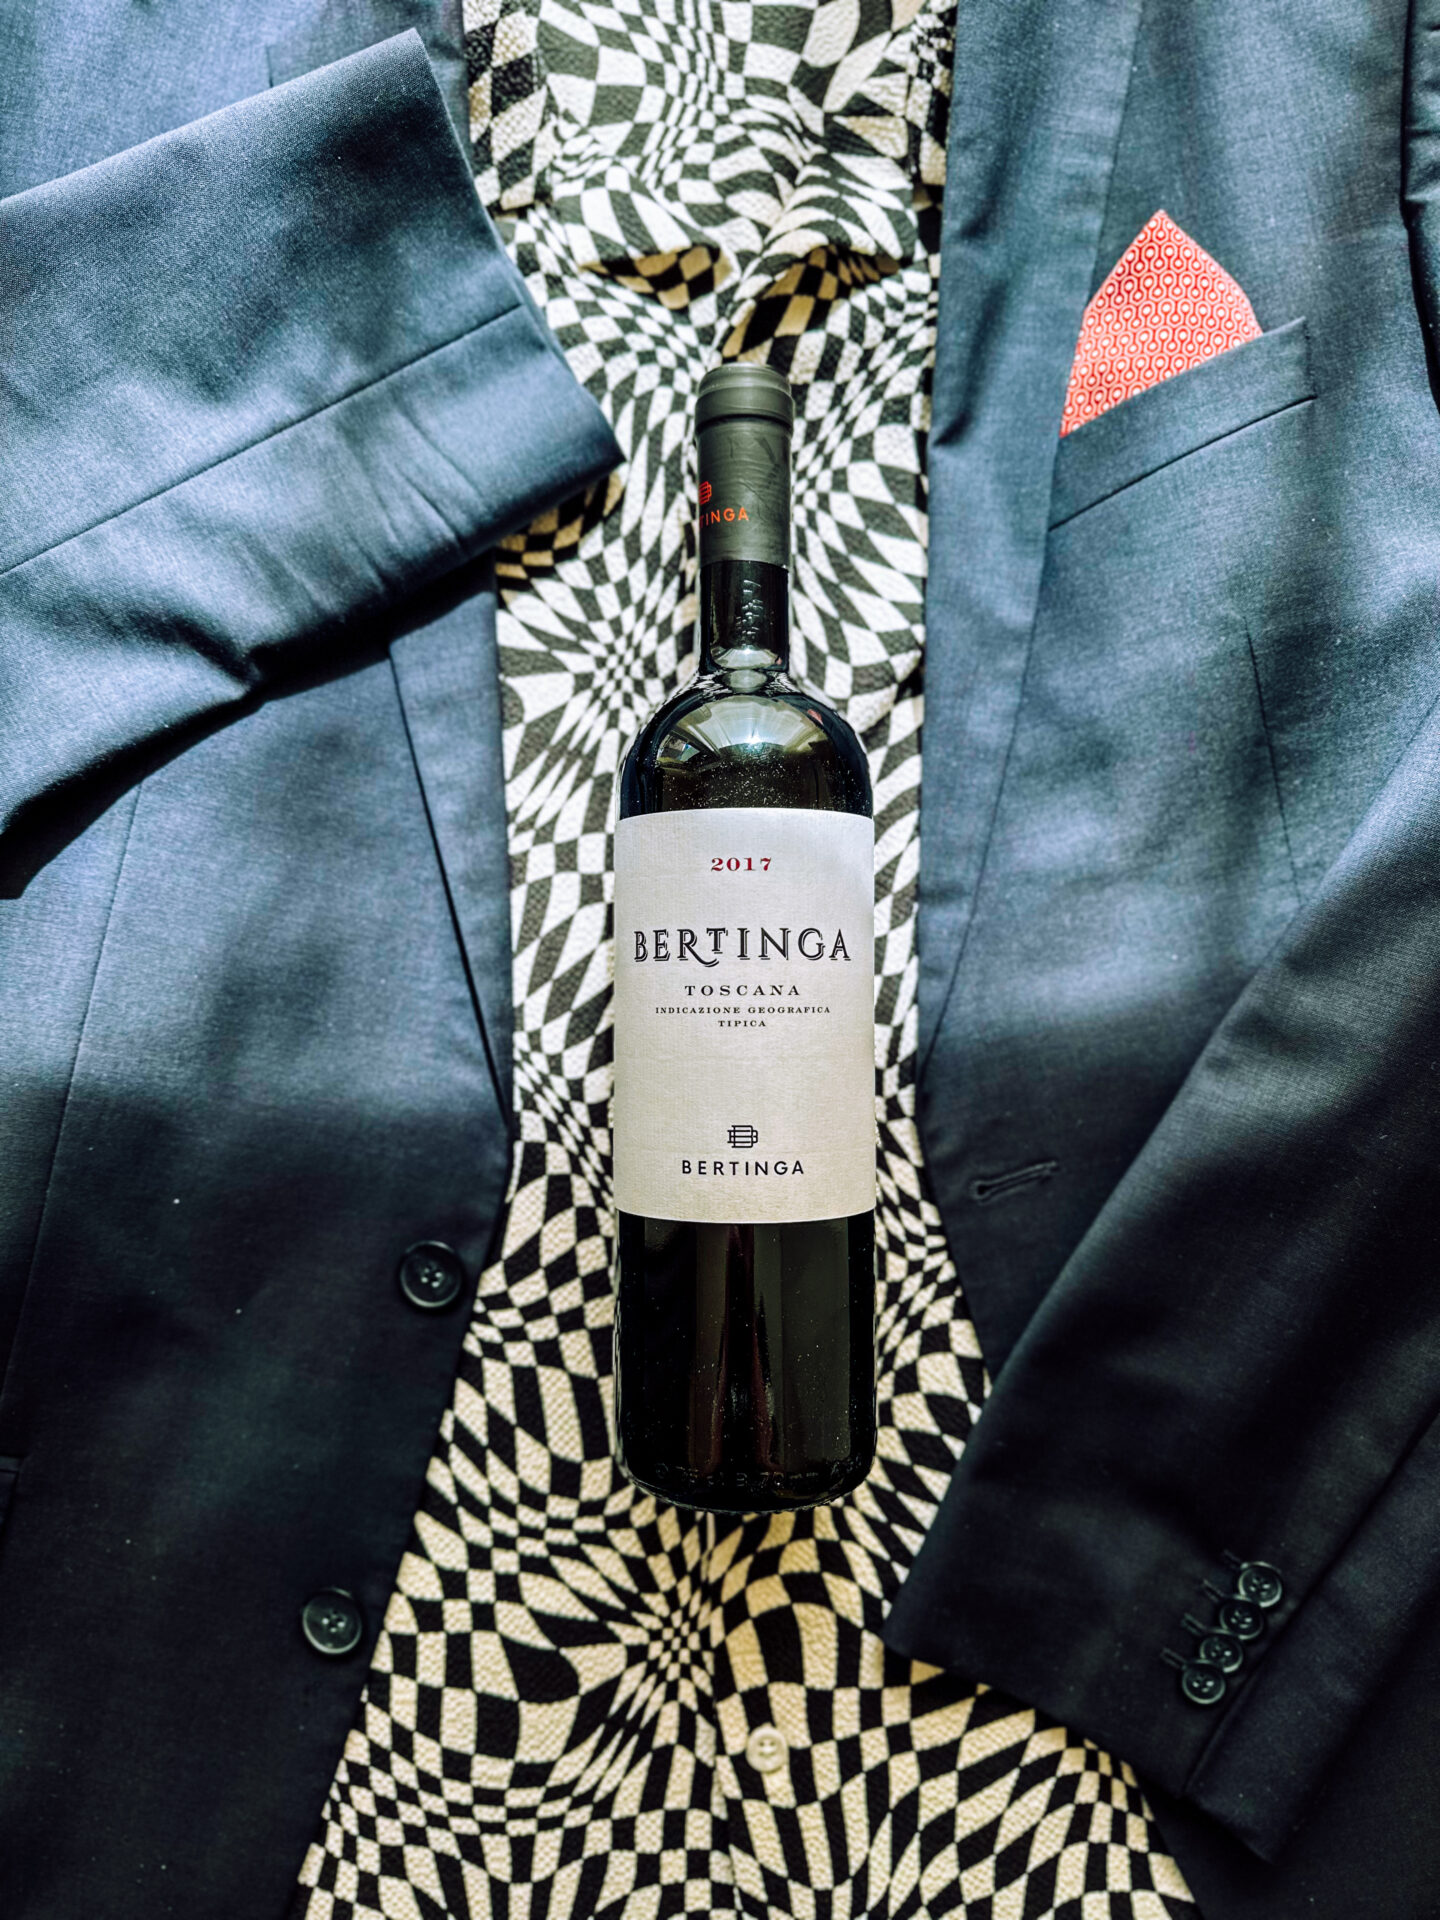 Bertinga 2017 Toscana wine